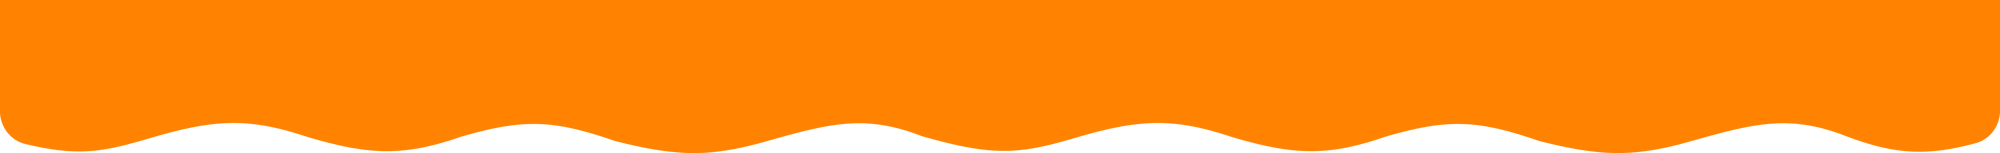 BG_Orange-1